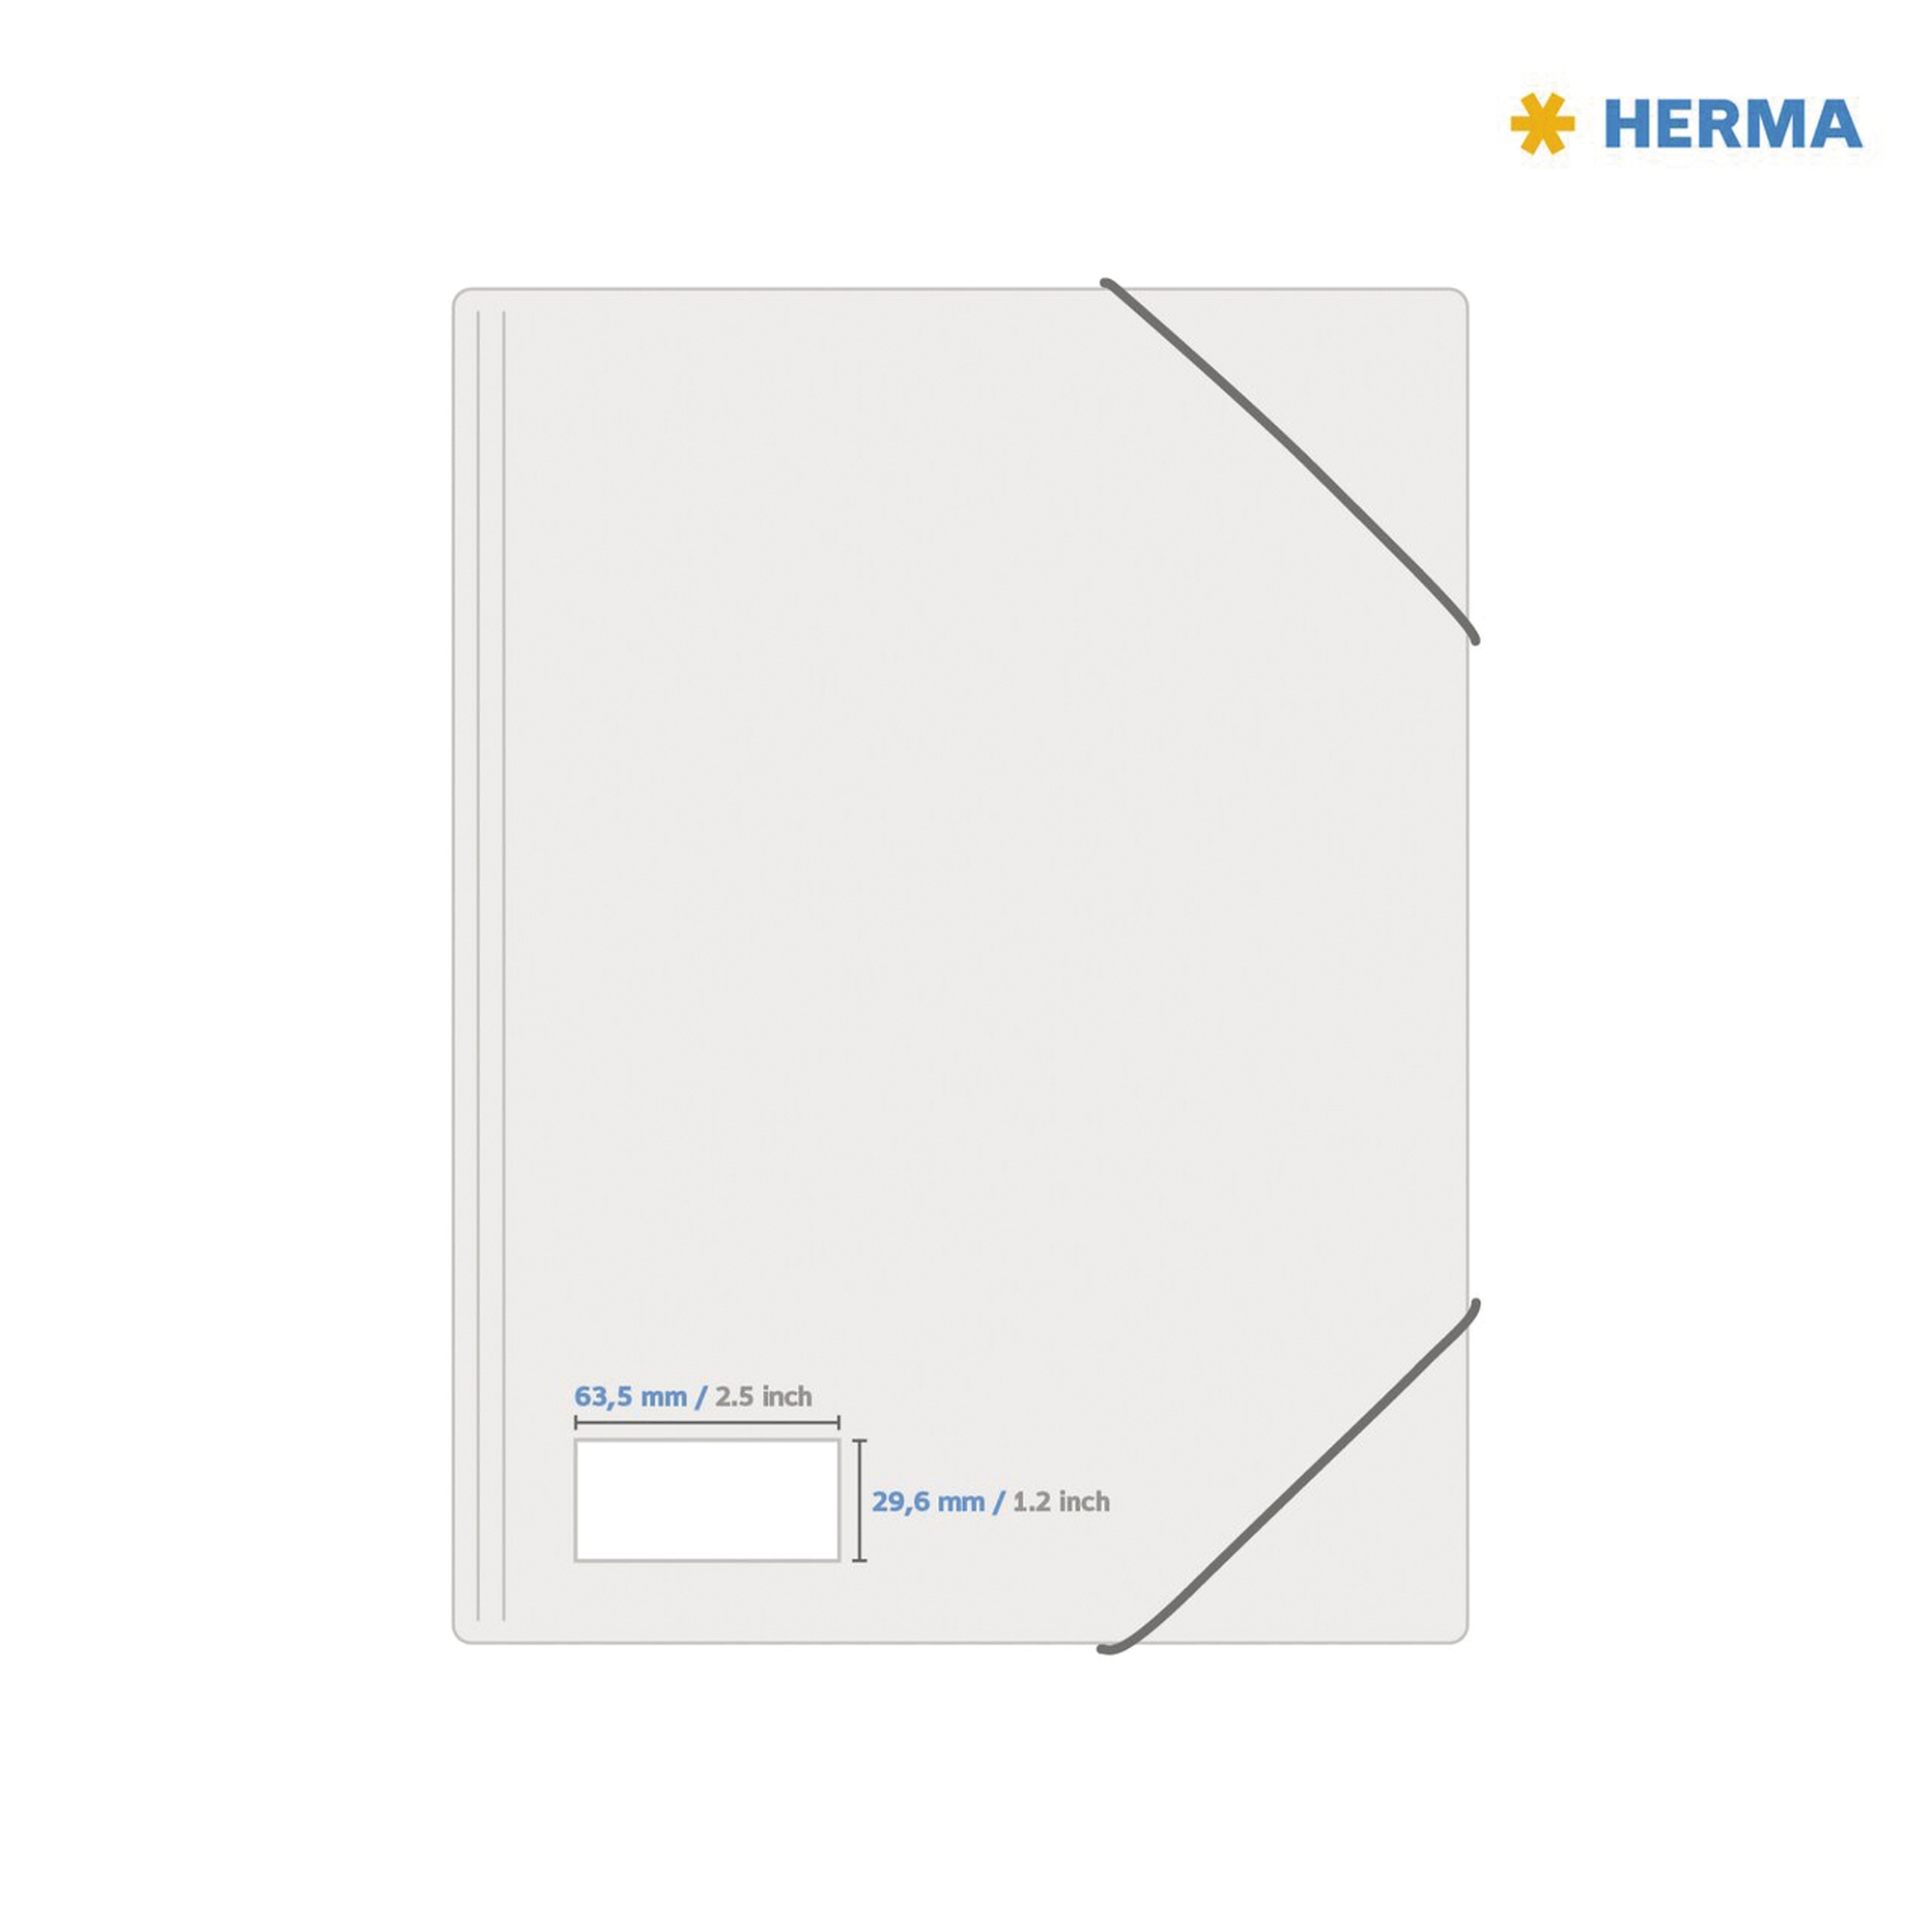 HERMA Folienetikett 63,5 x 29,6 mm